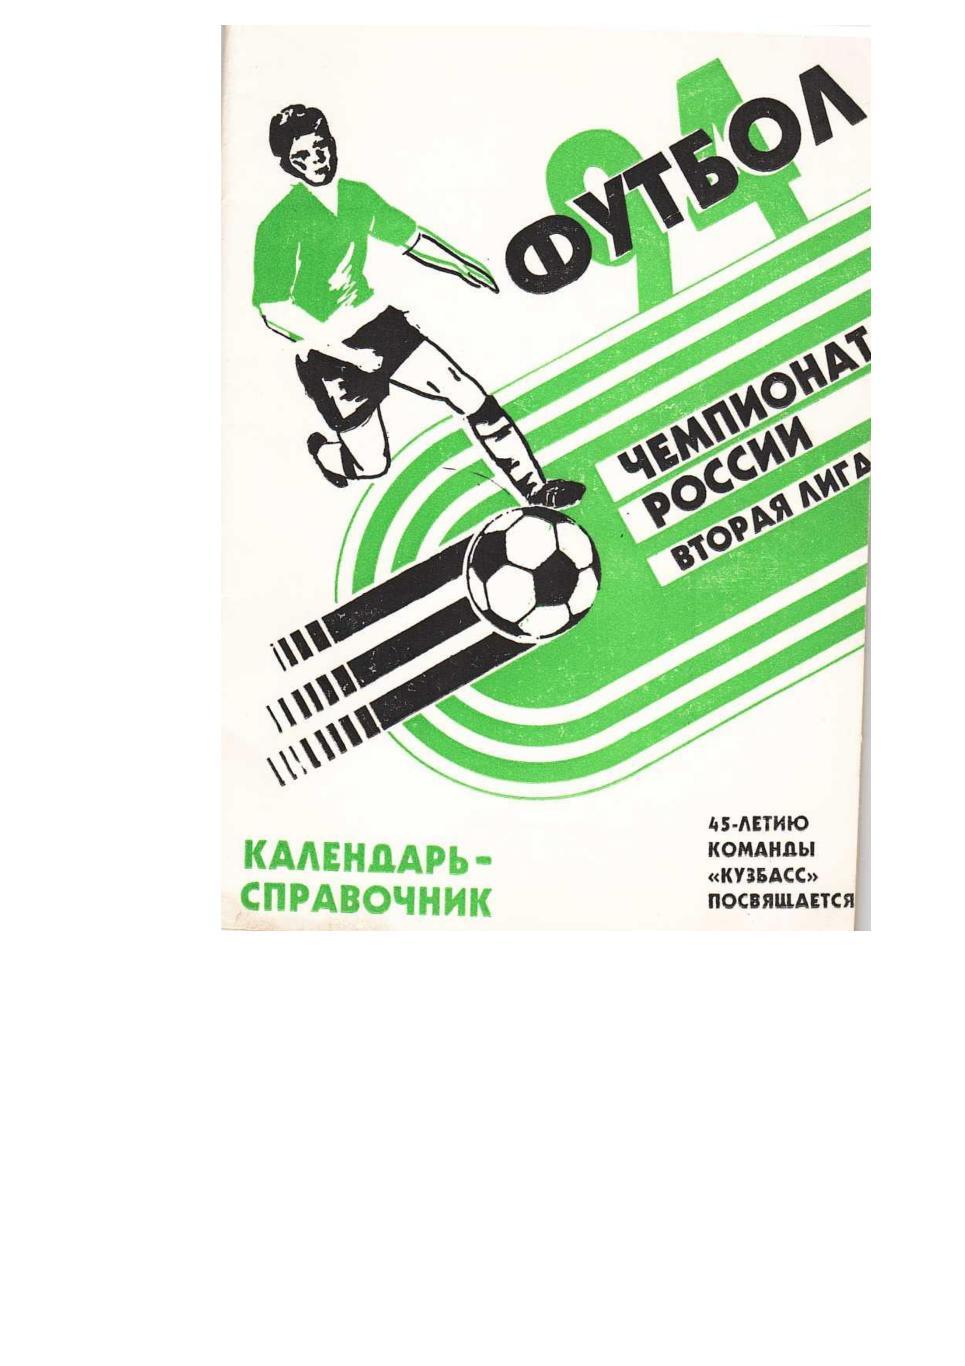 Футбол 94. Кемерово. Календарь-справочник.